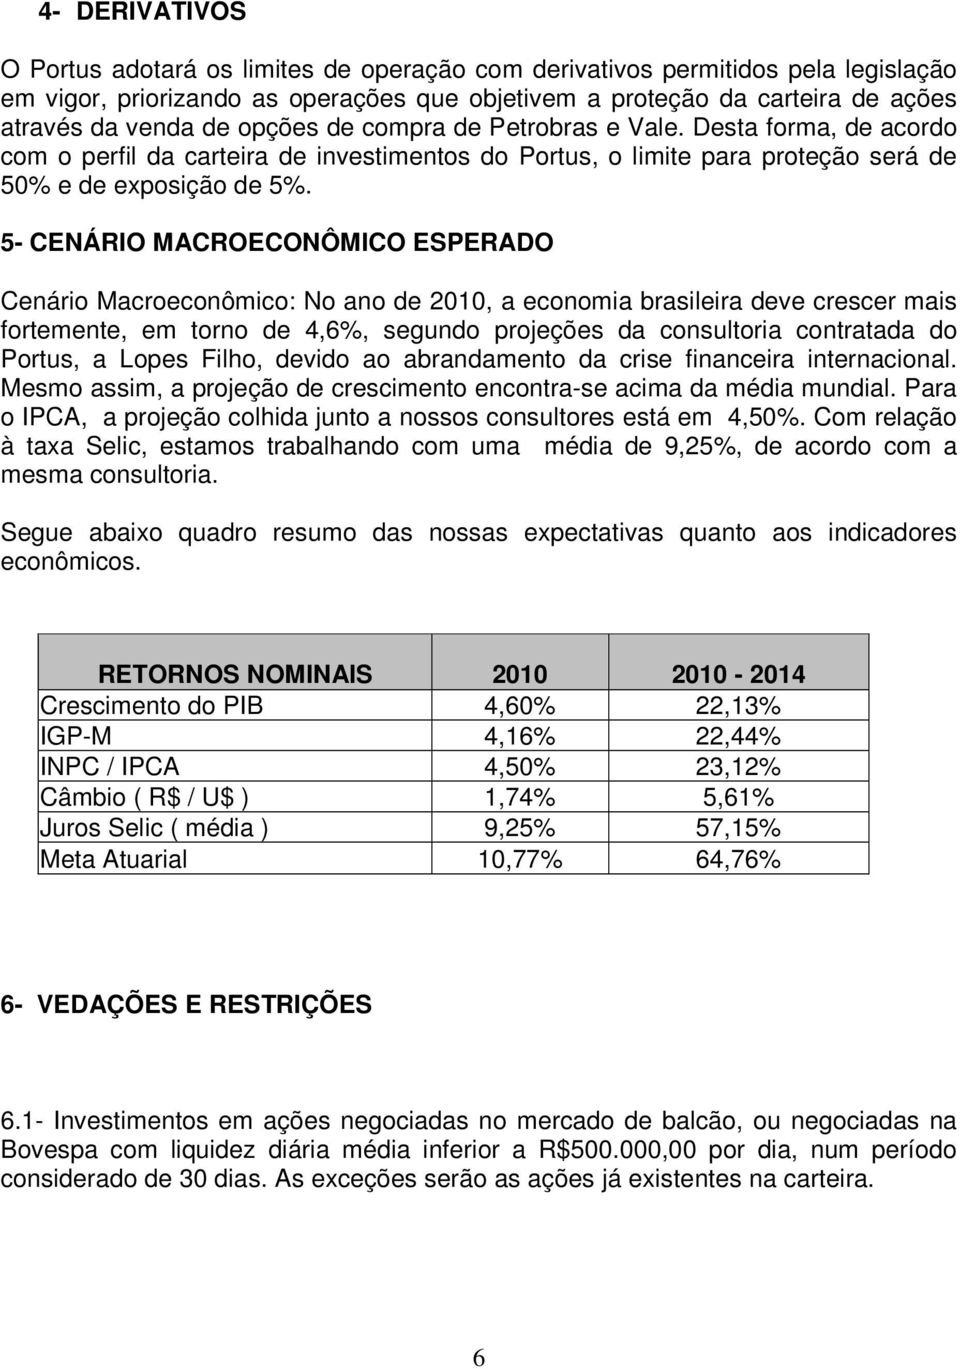 5- CENÁRIO MACROECONÔMICO ESPERADO Cenário Macroeconômico: No ano de 2010, a economia brasileira deve crescer mais fortemente, em torno de 4,6%, segundo projeções da consultoria contratada do Portus,